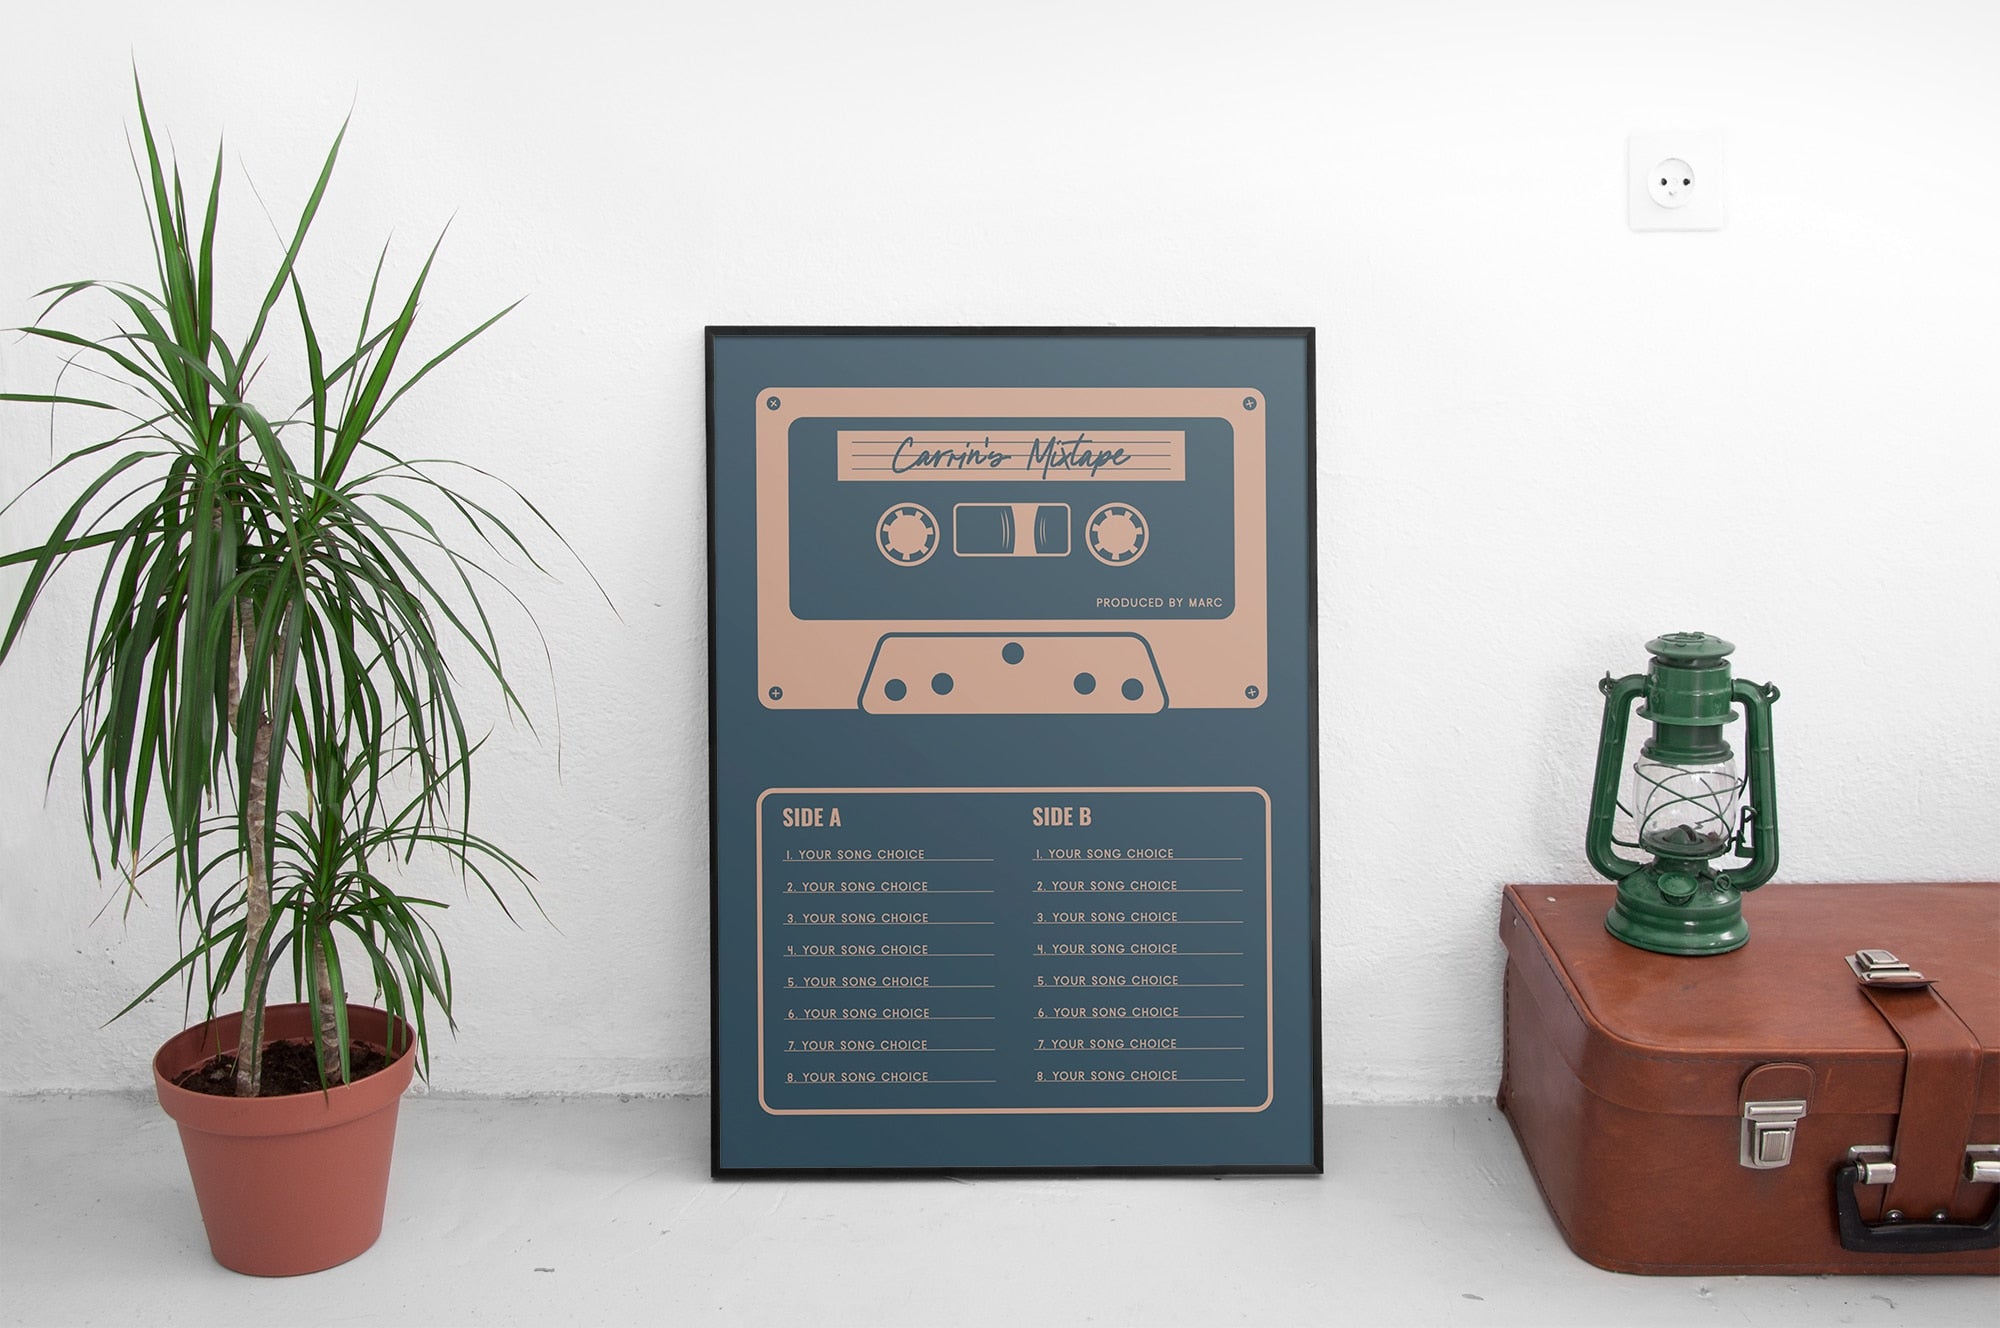 Custom Mixtape Poster, Retro Cassette Tape Print, Blue